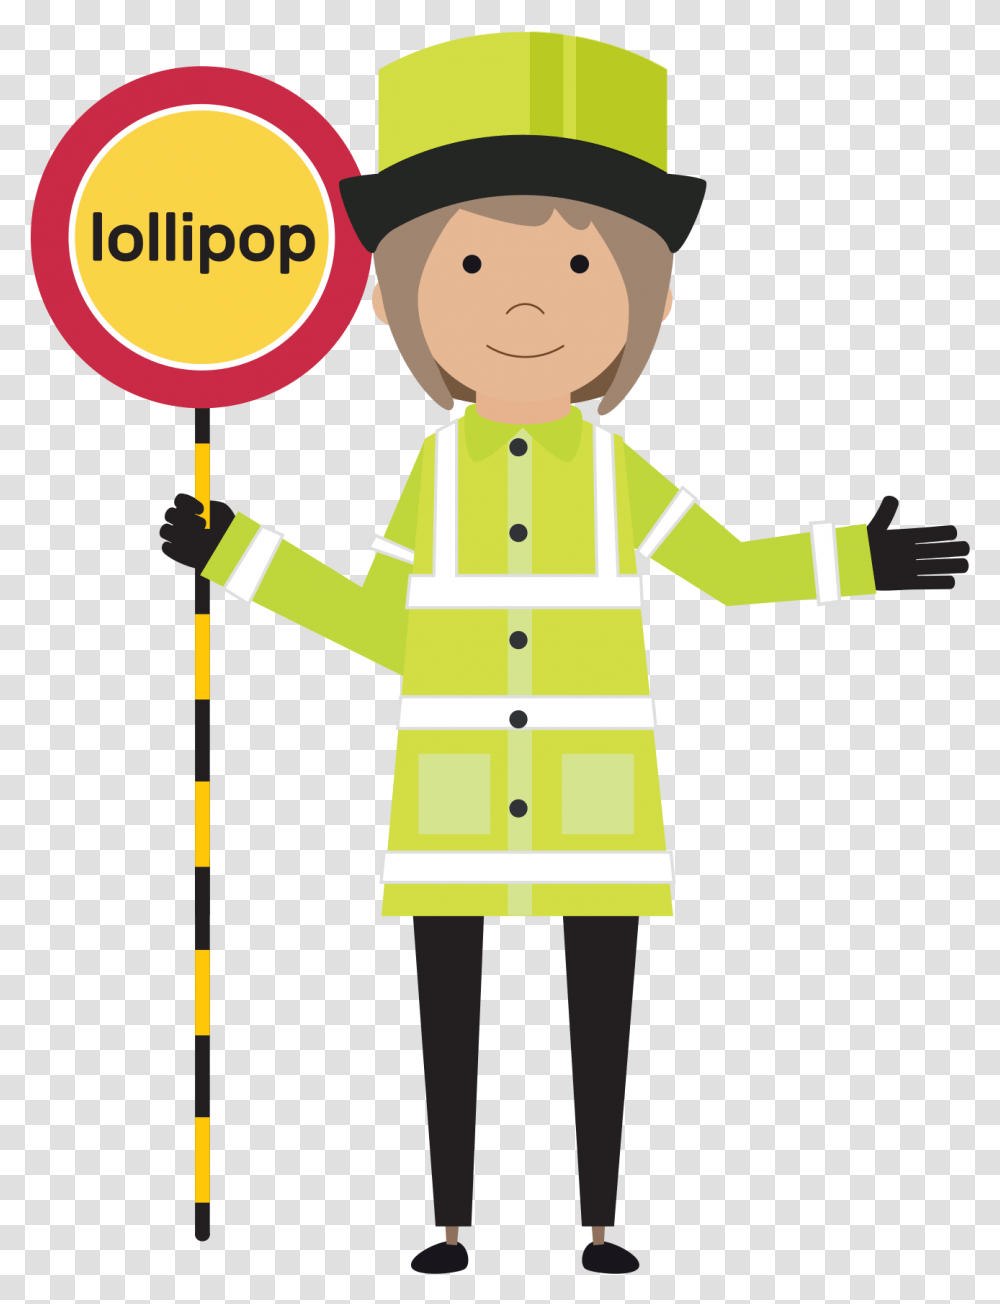 Ask The Lollipop Lady Lollipop Lady Clipart, Apparel, Coat, Raincoat Transparent Png